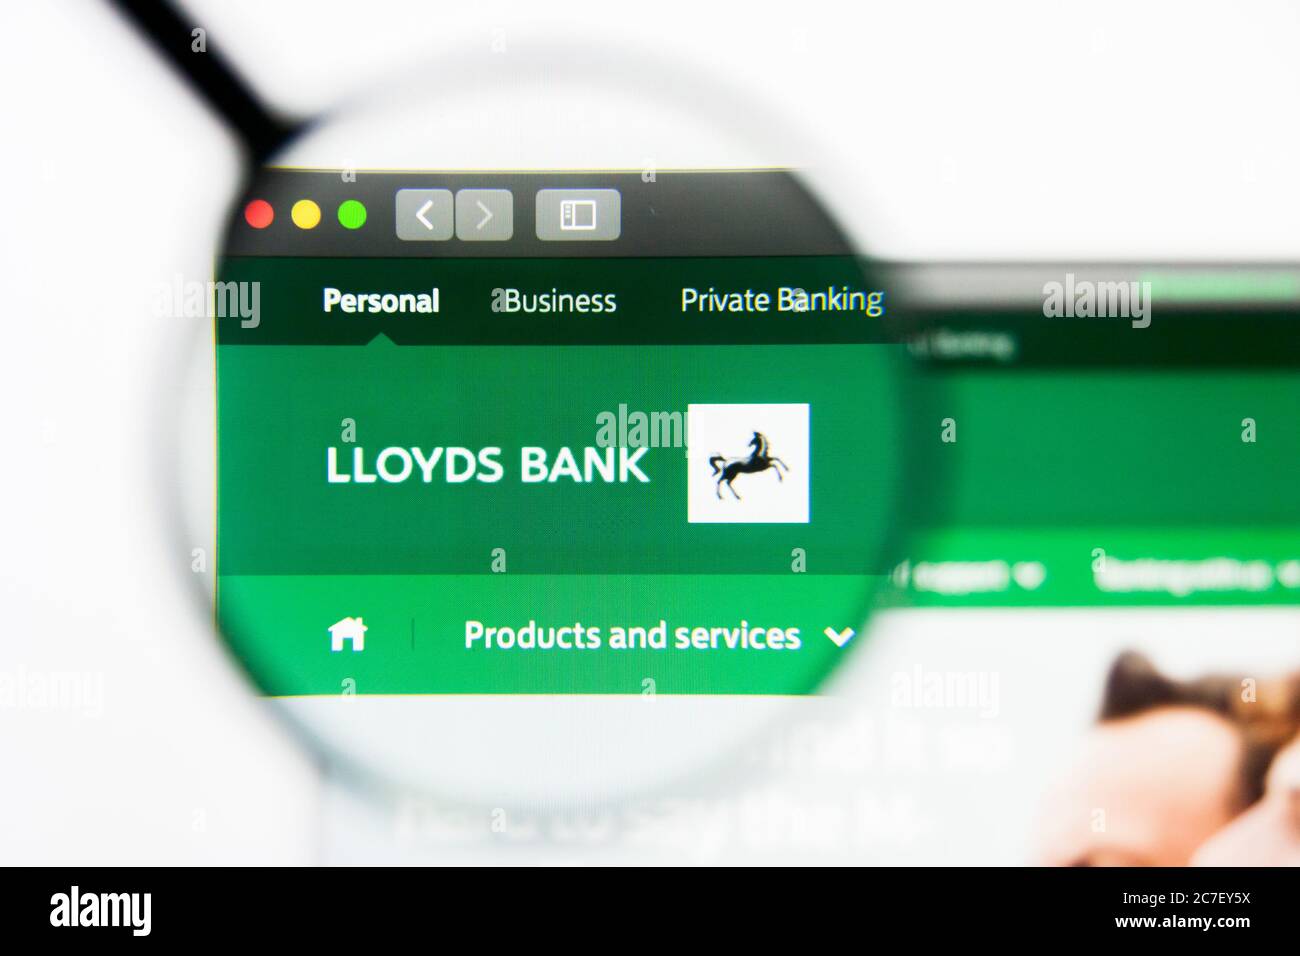 Los Angeles, California, USA - 24 Marzo 2019: Editoriale illustrativo della homepage del sito del Gruppo Lloyds Banking. Logo Lloyds Banking Group visibile su Foto Stock